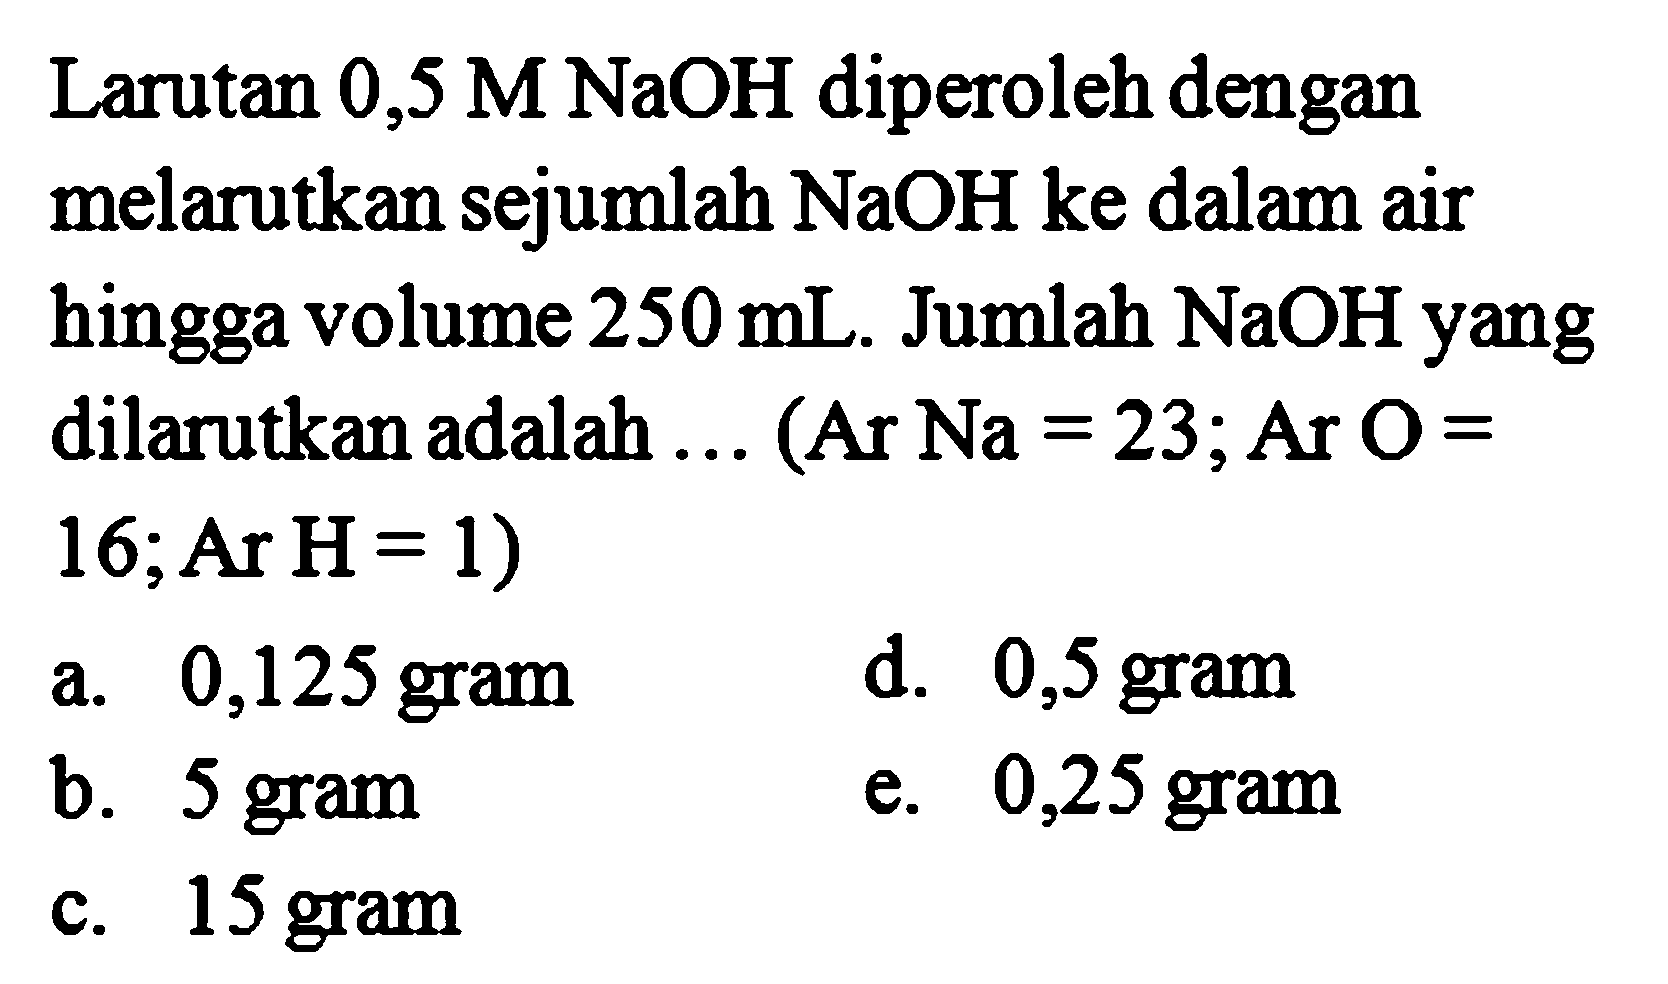 Larutan 0,5 M NaOH diperoleh dengan melarutkan sejumlah NaOH ke dalam air hingga volume 250 mL. Jumlah NaOH yang dilarutkan adalah ... (Ar Na = 23; Ar O = 16; Ar H= 1) 
